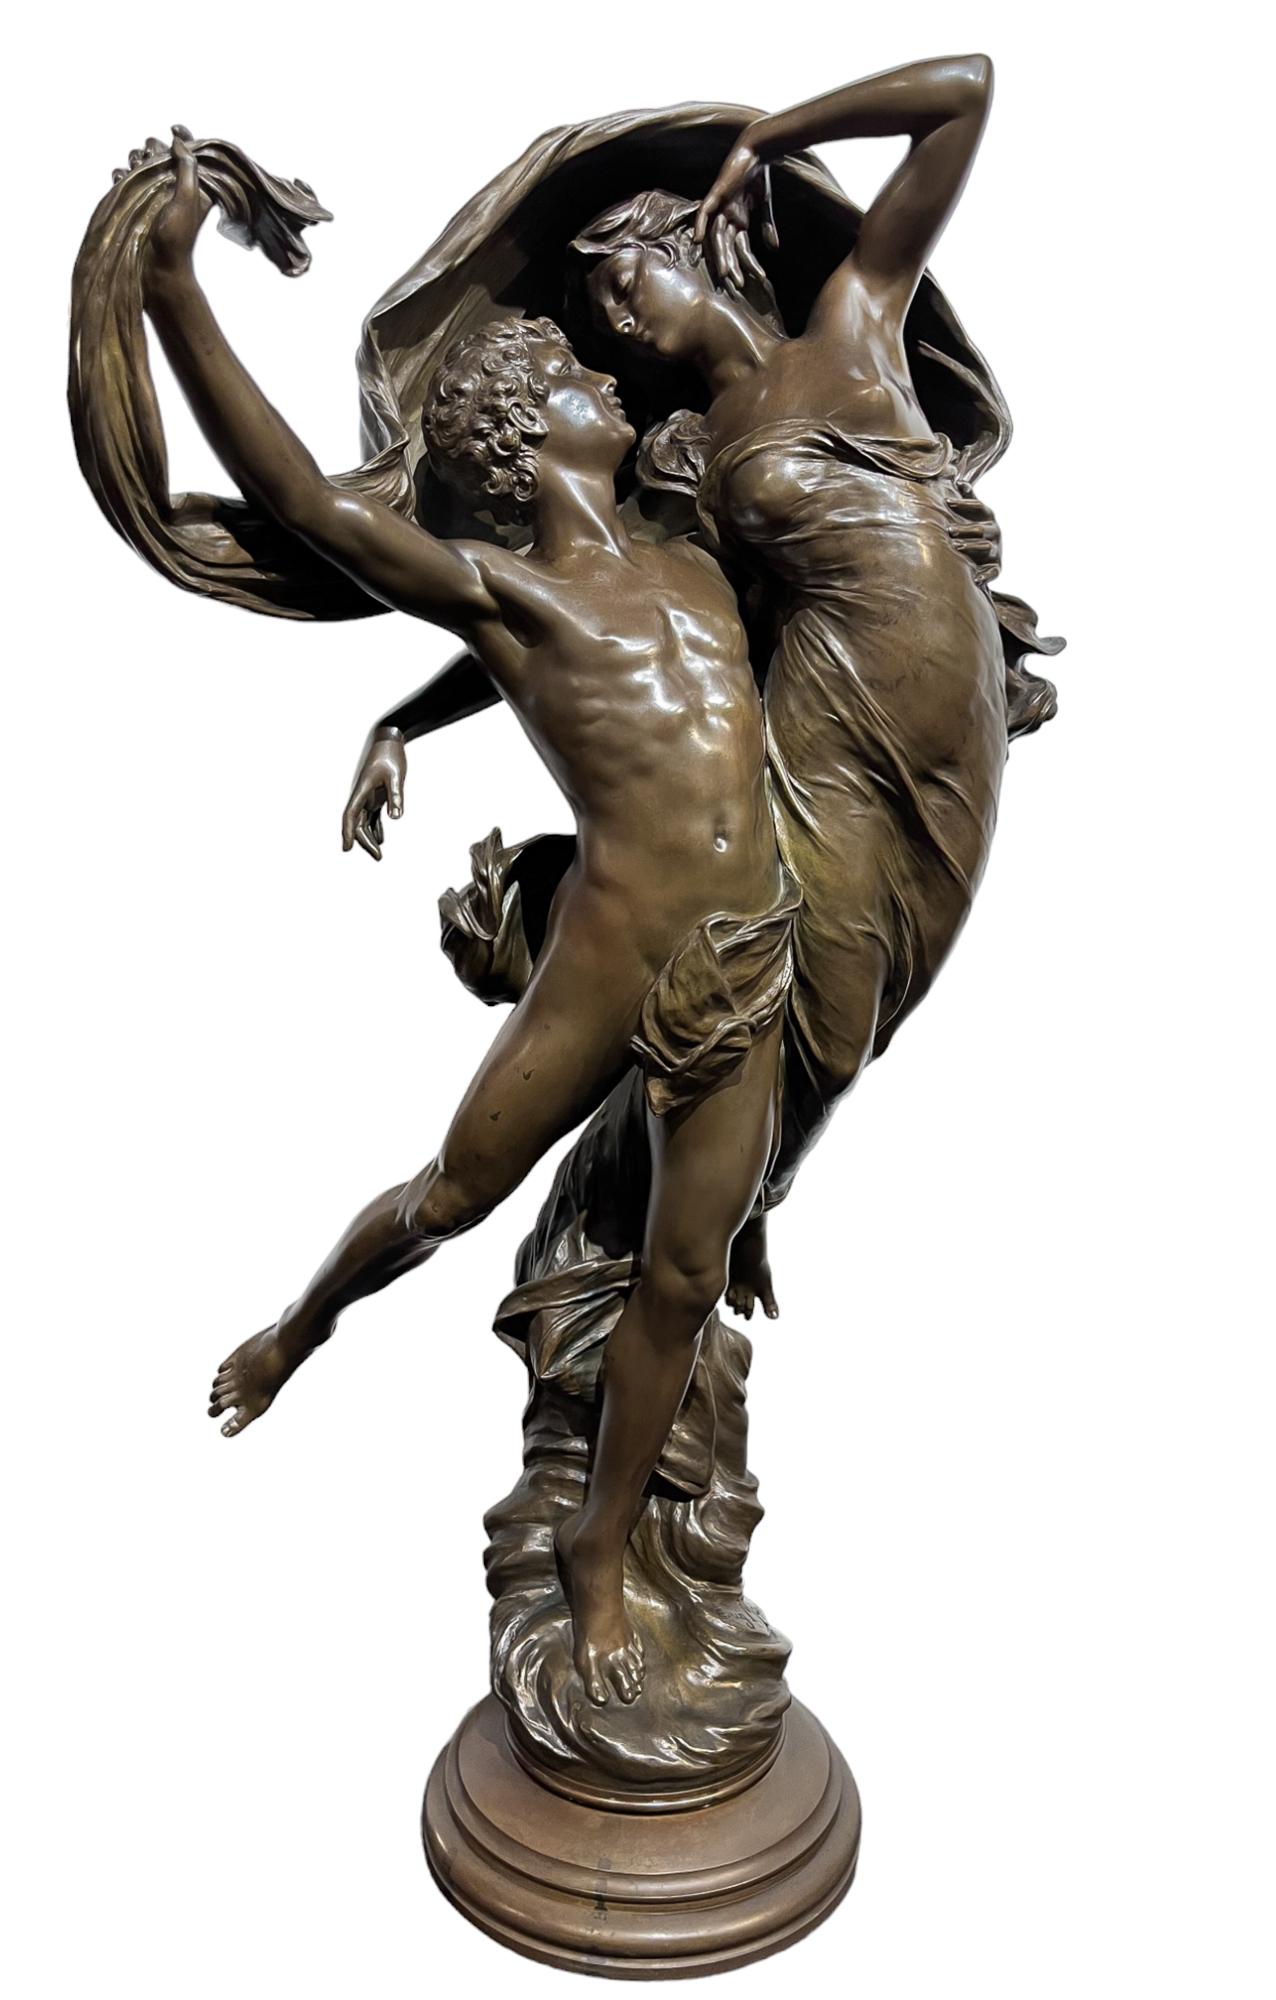 Figurative Sculpture Eugene Marioton - The Dance of Zephyr and Psyche par Eugéne Marioton (français, 1854-1933)